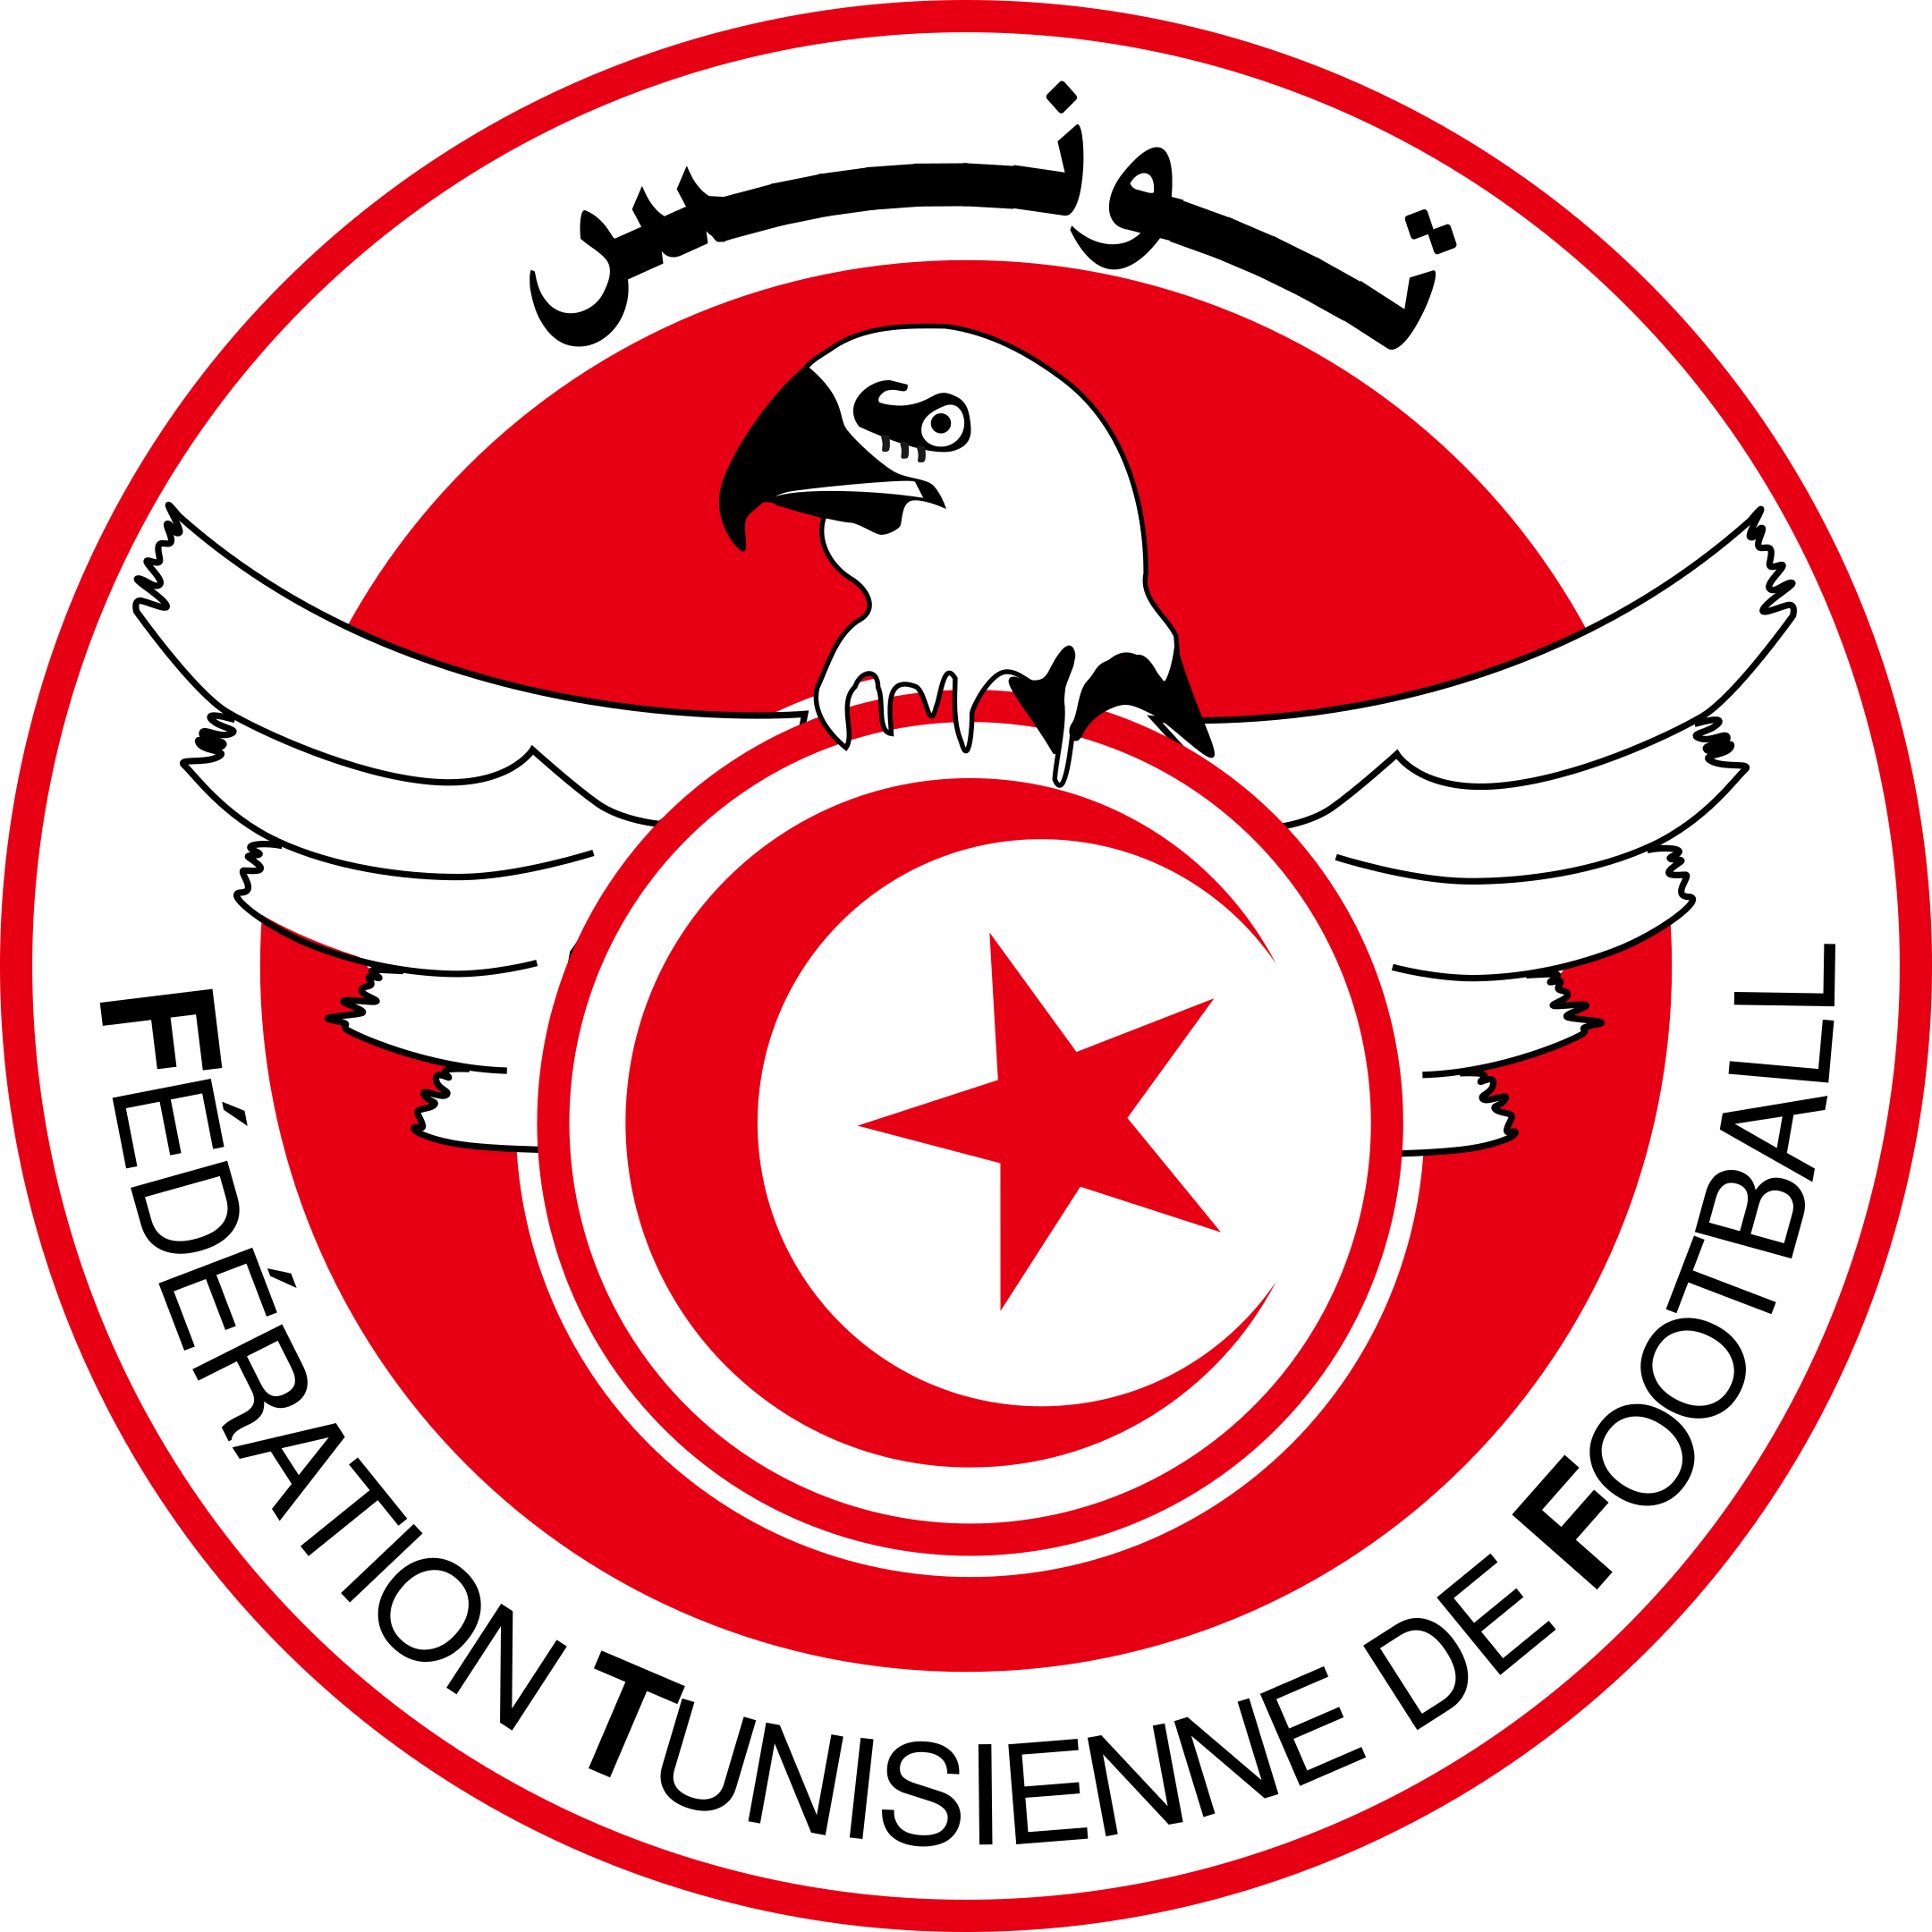 tunisia national football team logo 1 - Tunisia National Football Team